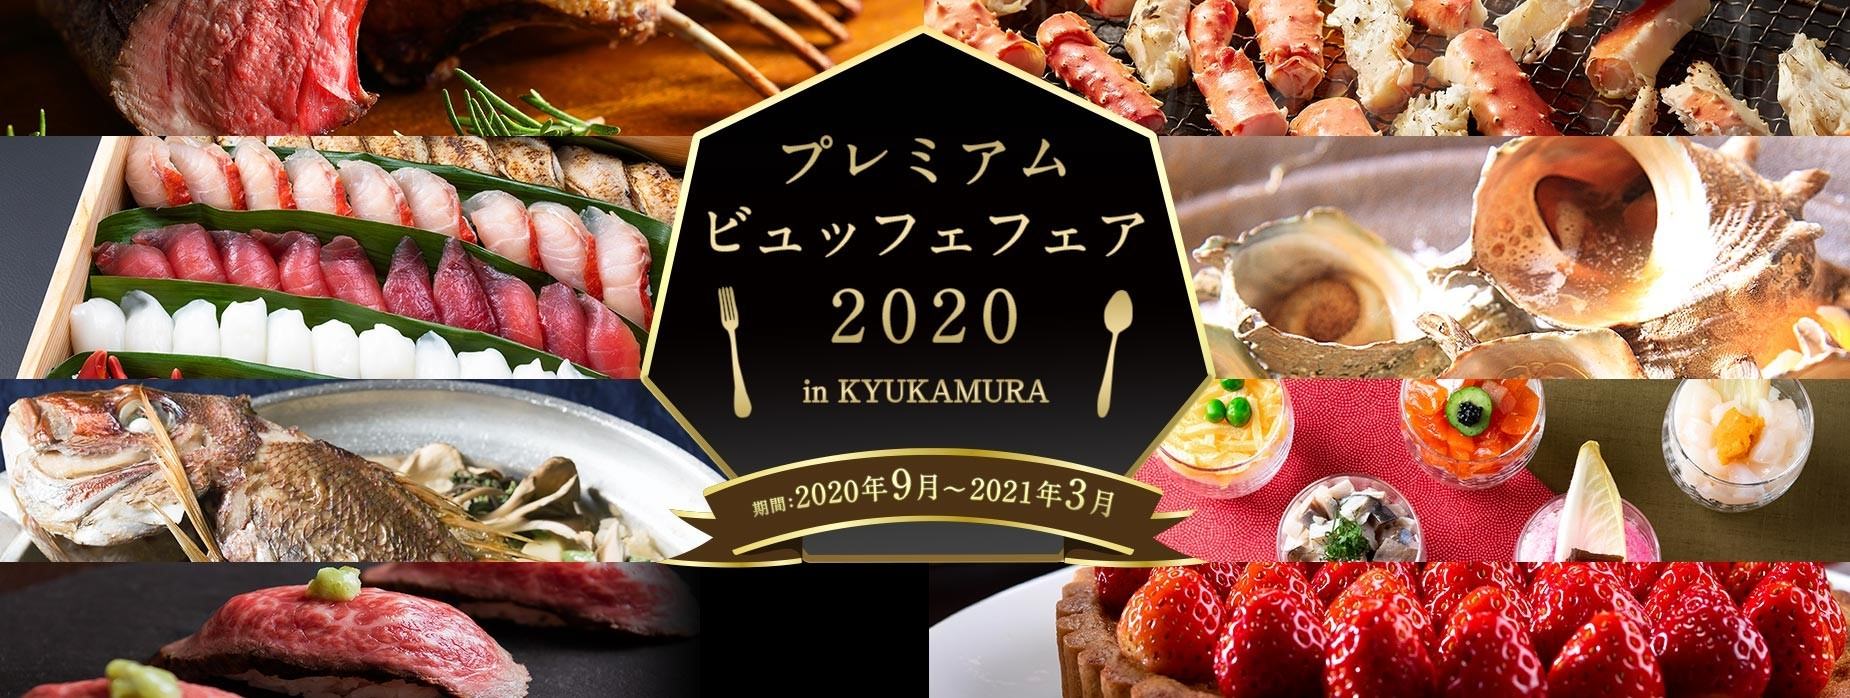 日本料理『京橋 婆娑羅』がリモートワークに最適な
ランチの個室ワークプランを8月25日より提供開始